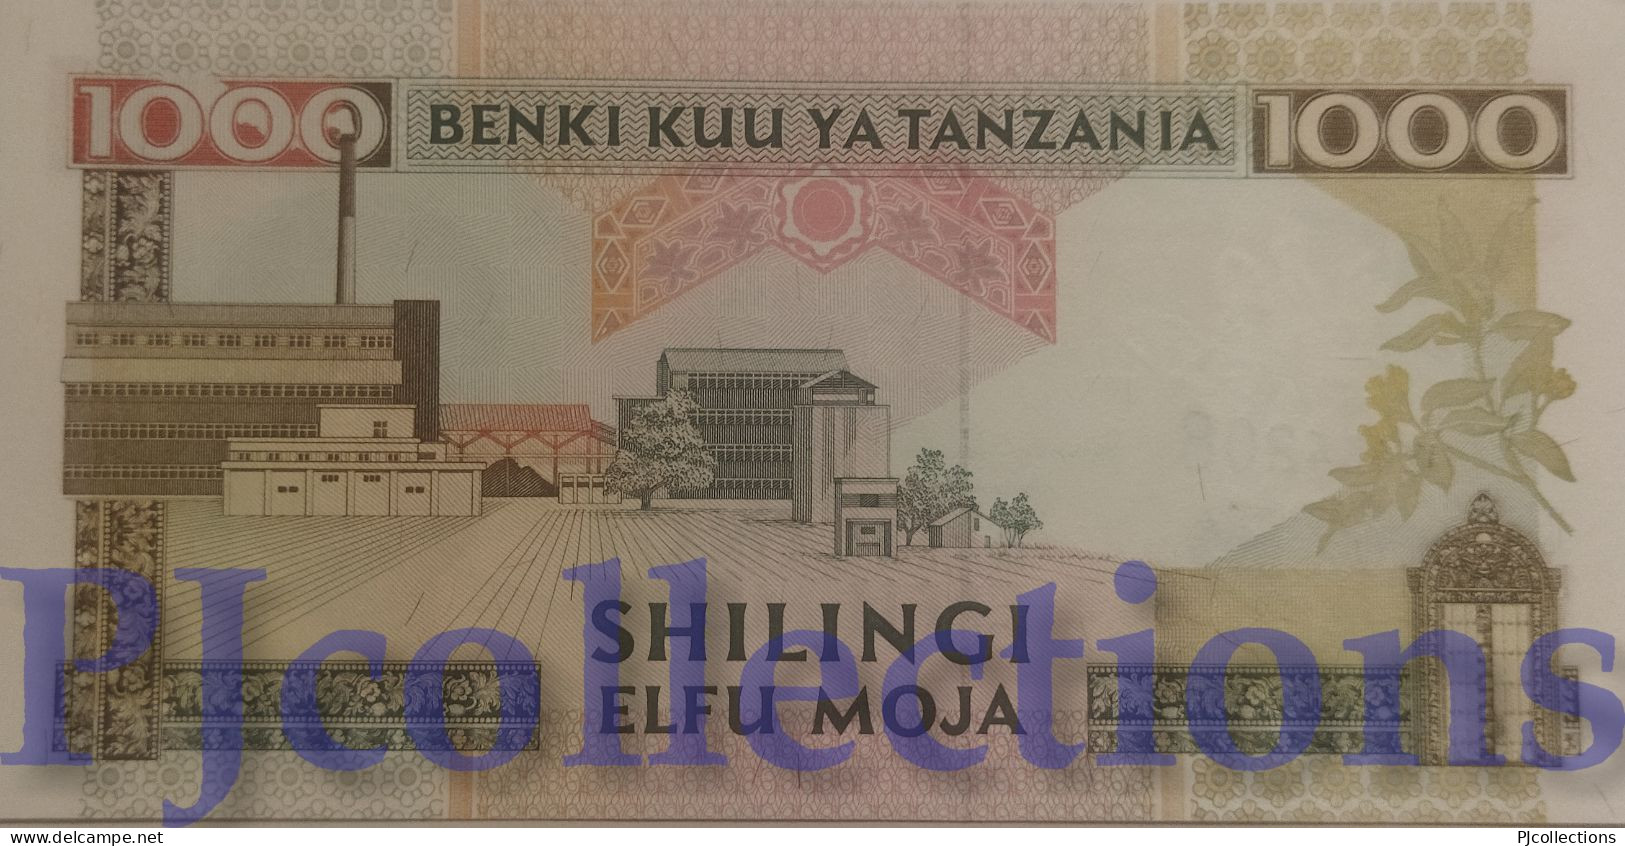 TANZANIA 1000 SHILINGI 1993 PICK 27a UNC - Tanzanie